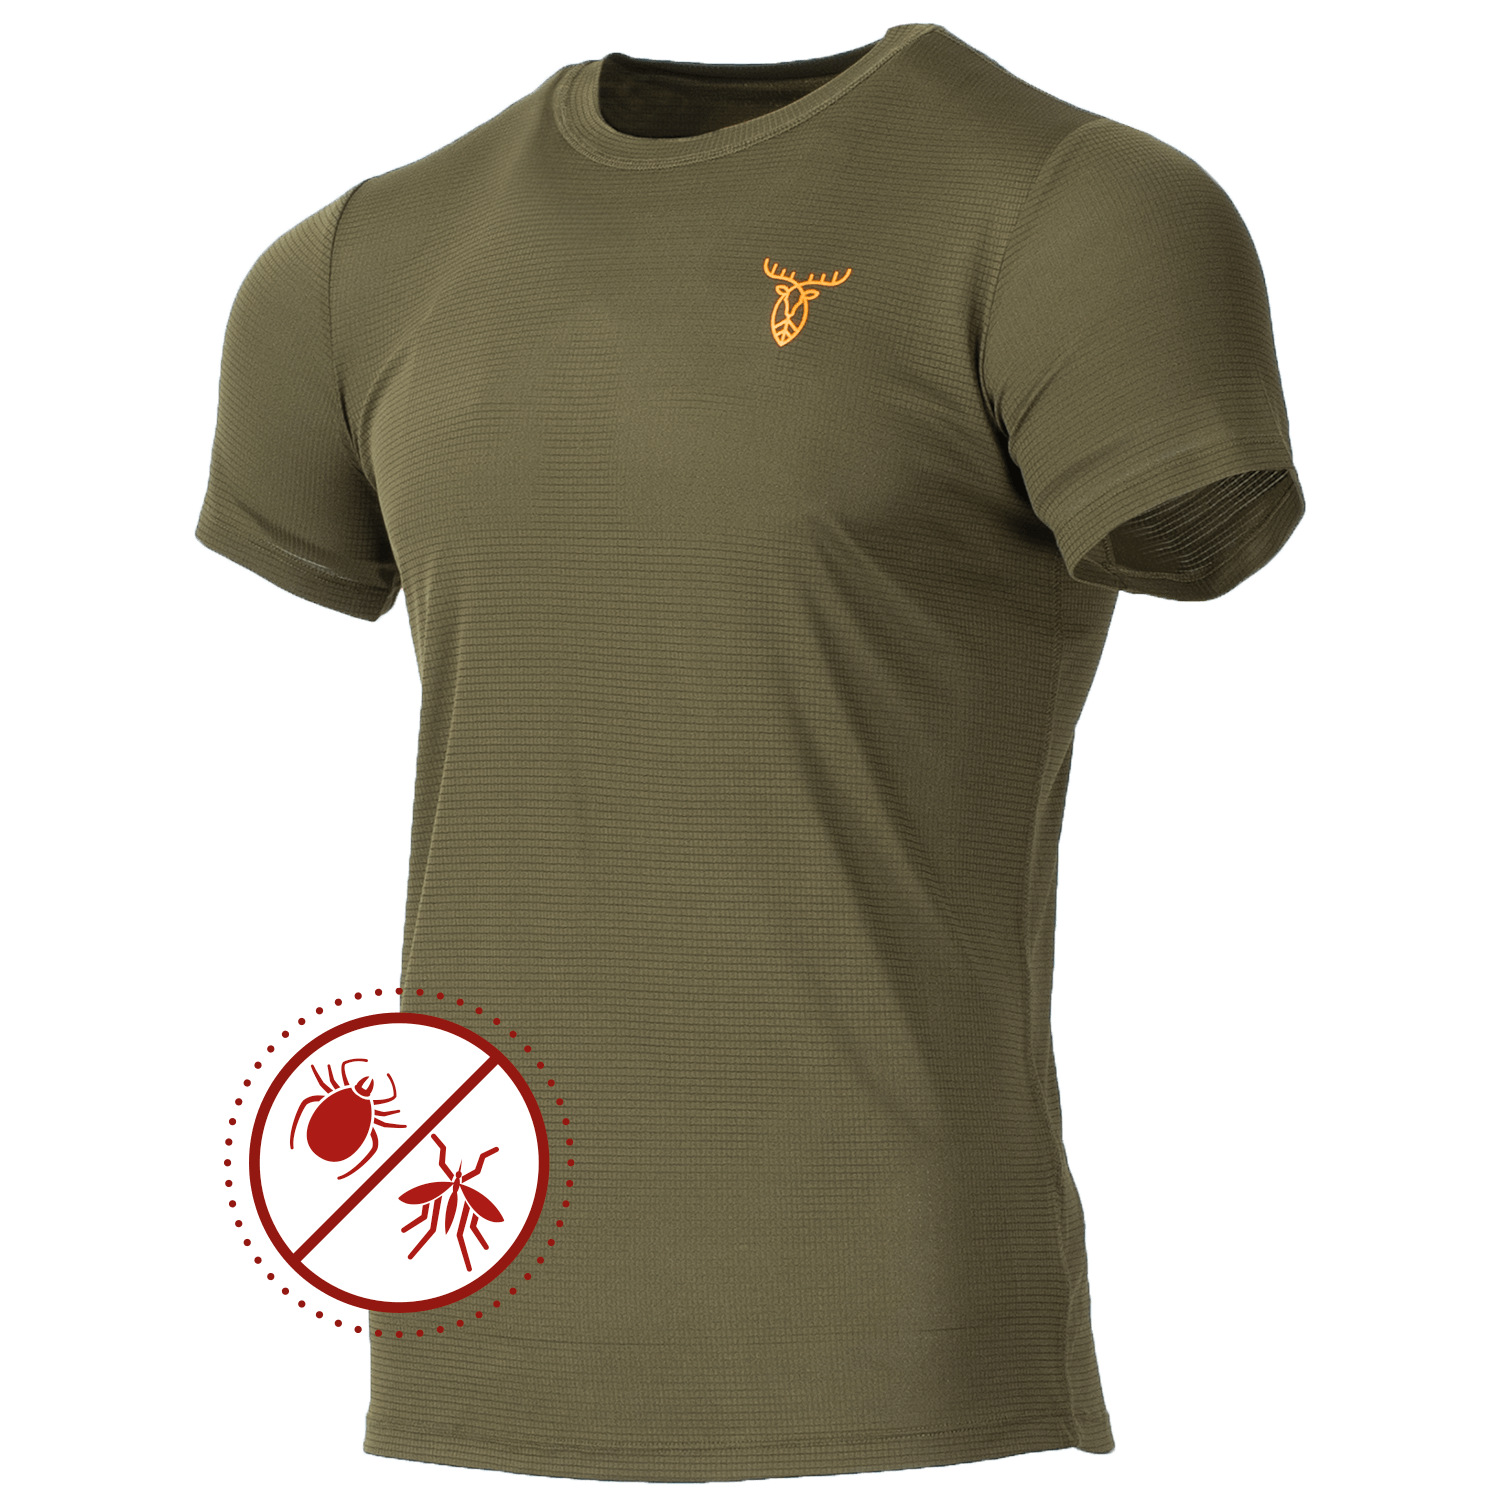 Pirscher Gear Ultralight Tanatex T-Shirt - Sommer-Jagdbekleidung